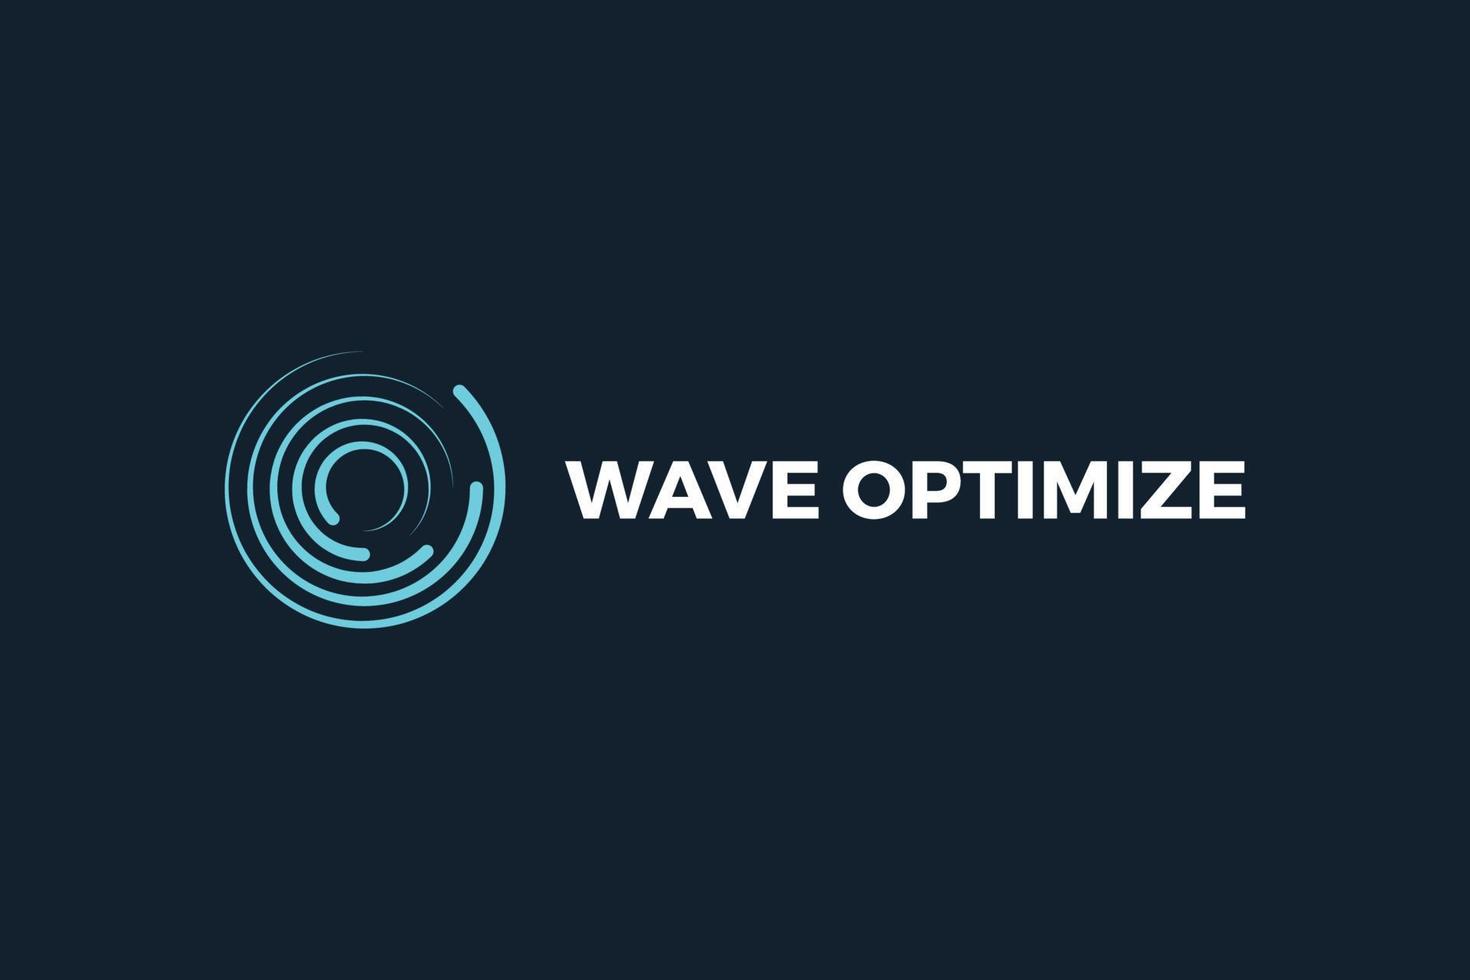 Wave optimize letter O green color business logo design vector